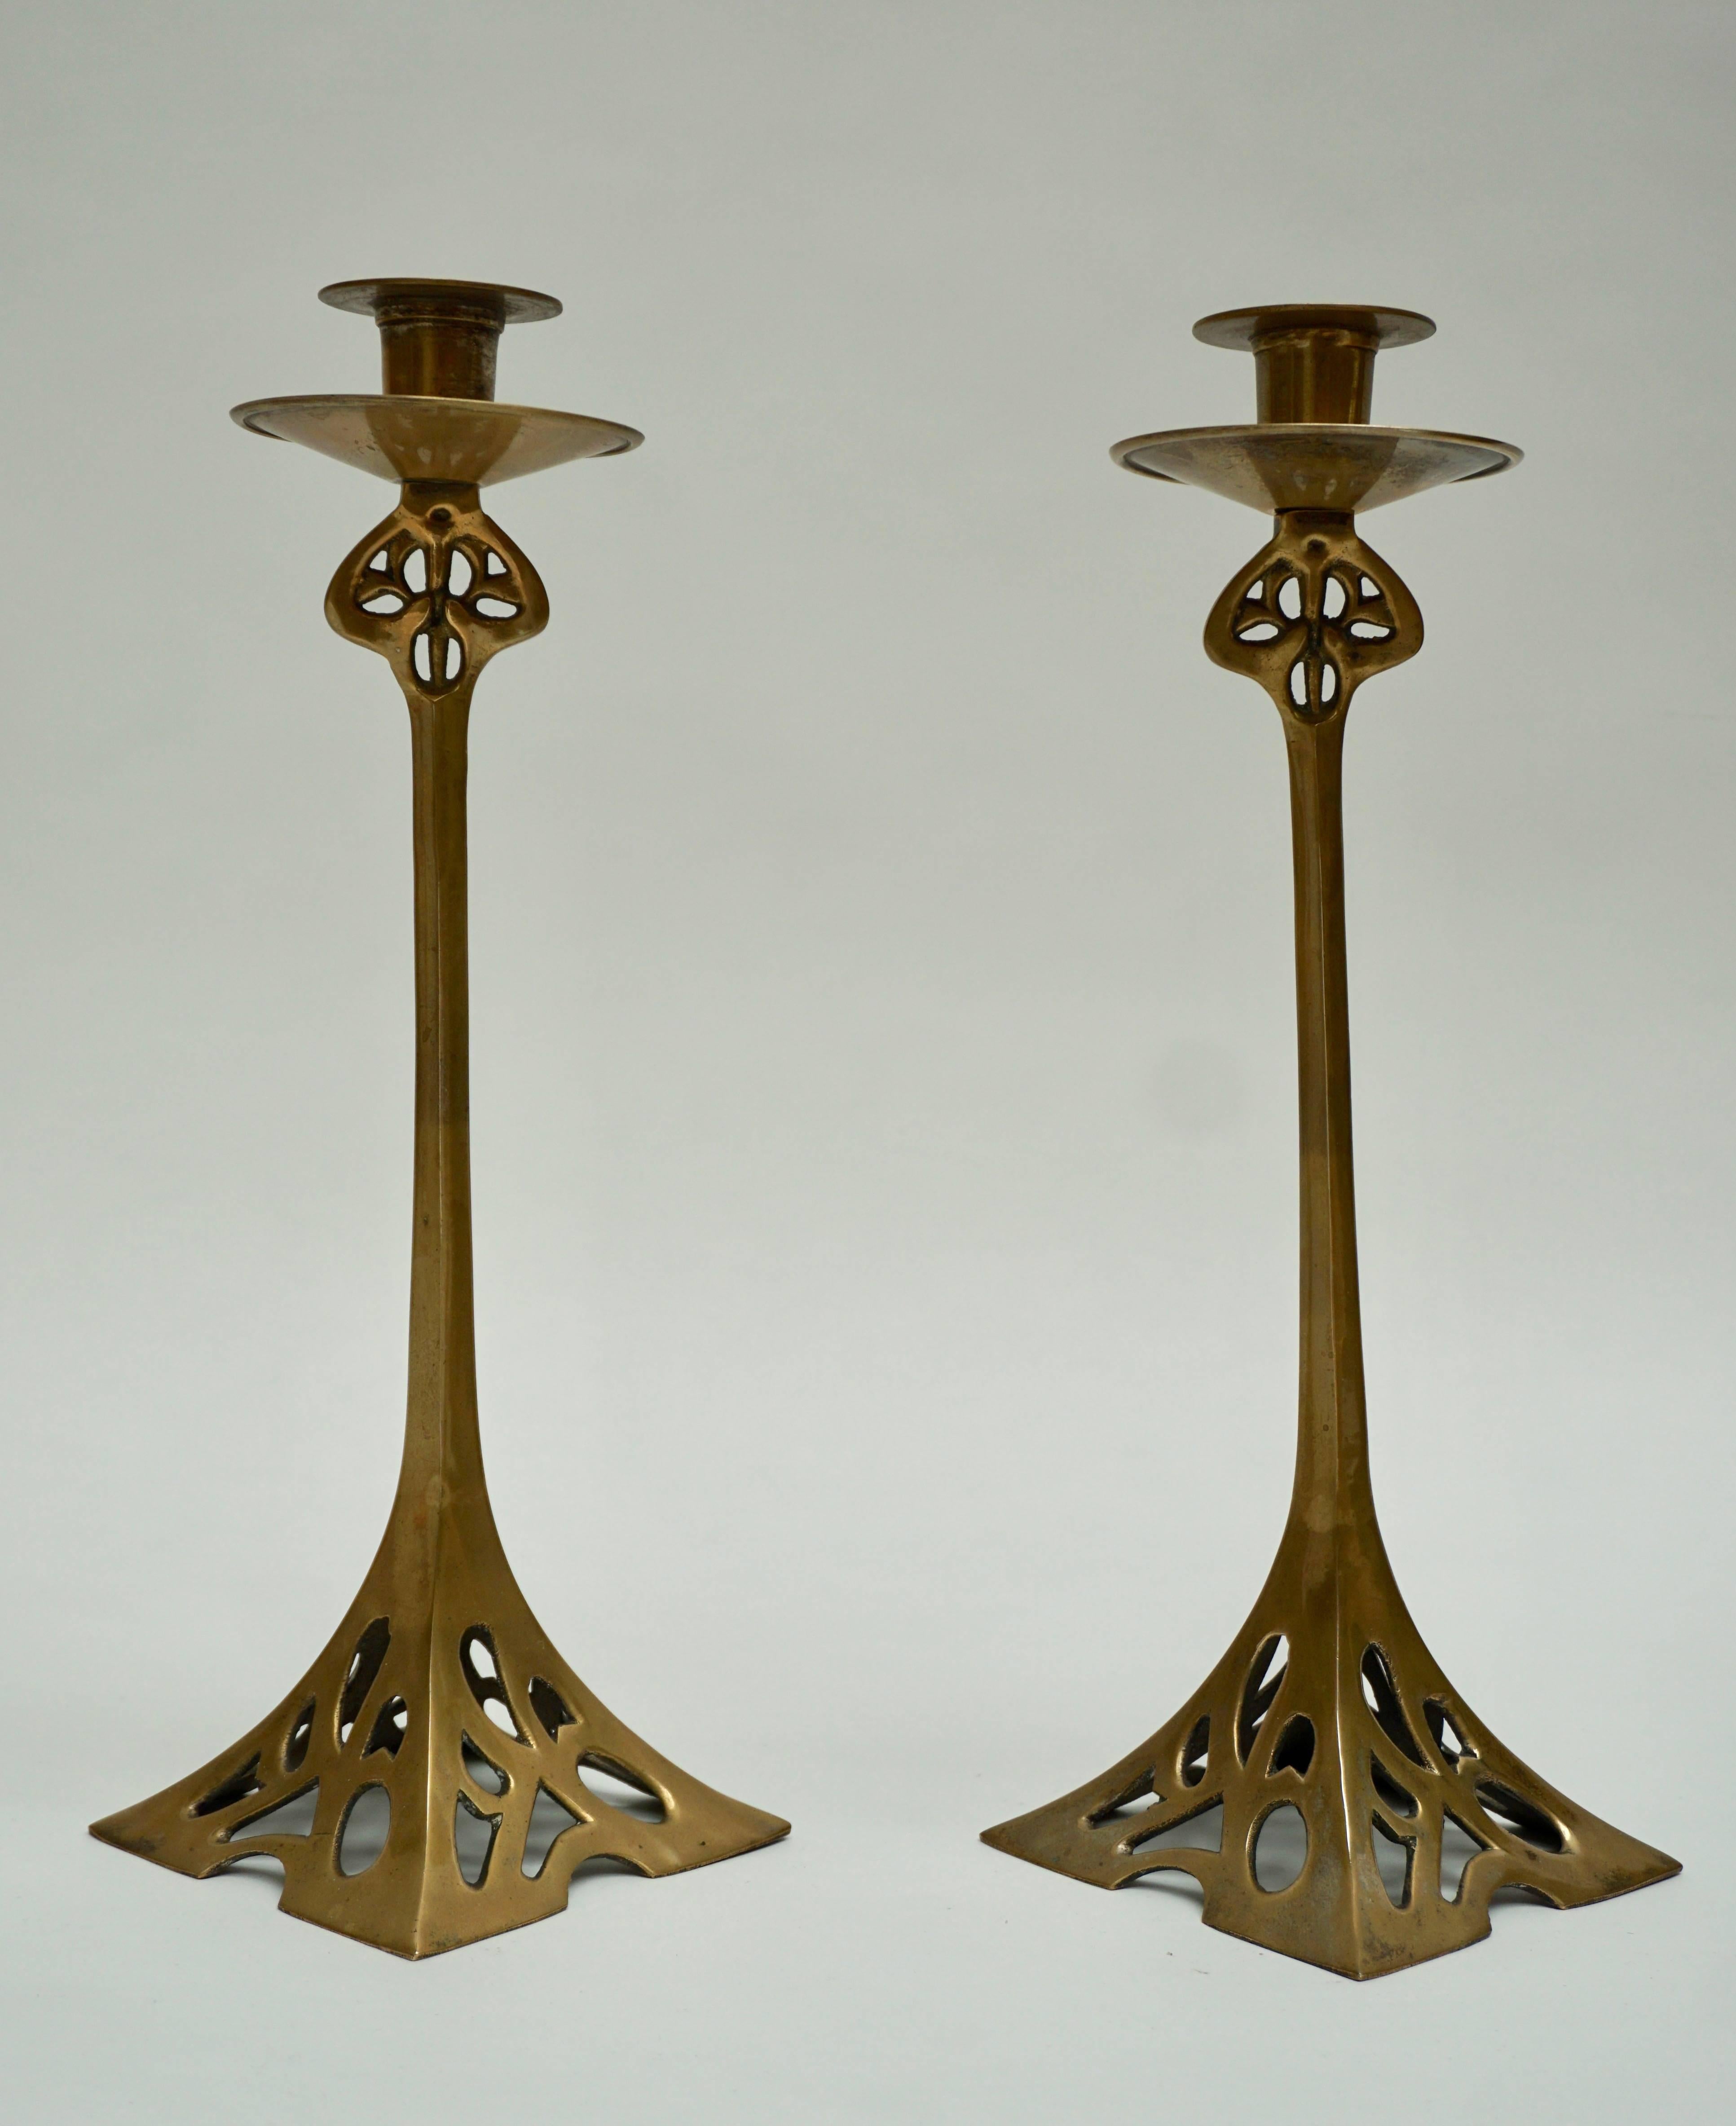 A pair of Art Nouveau brass candlesticks.
Measures: Height 37 cm.